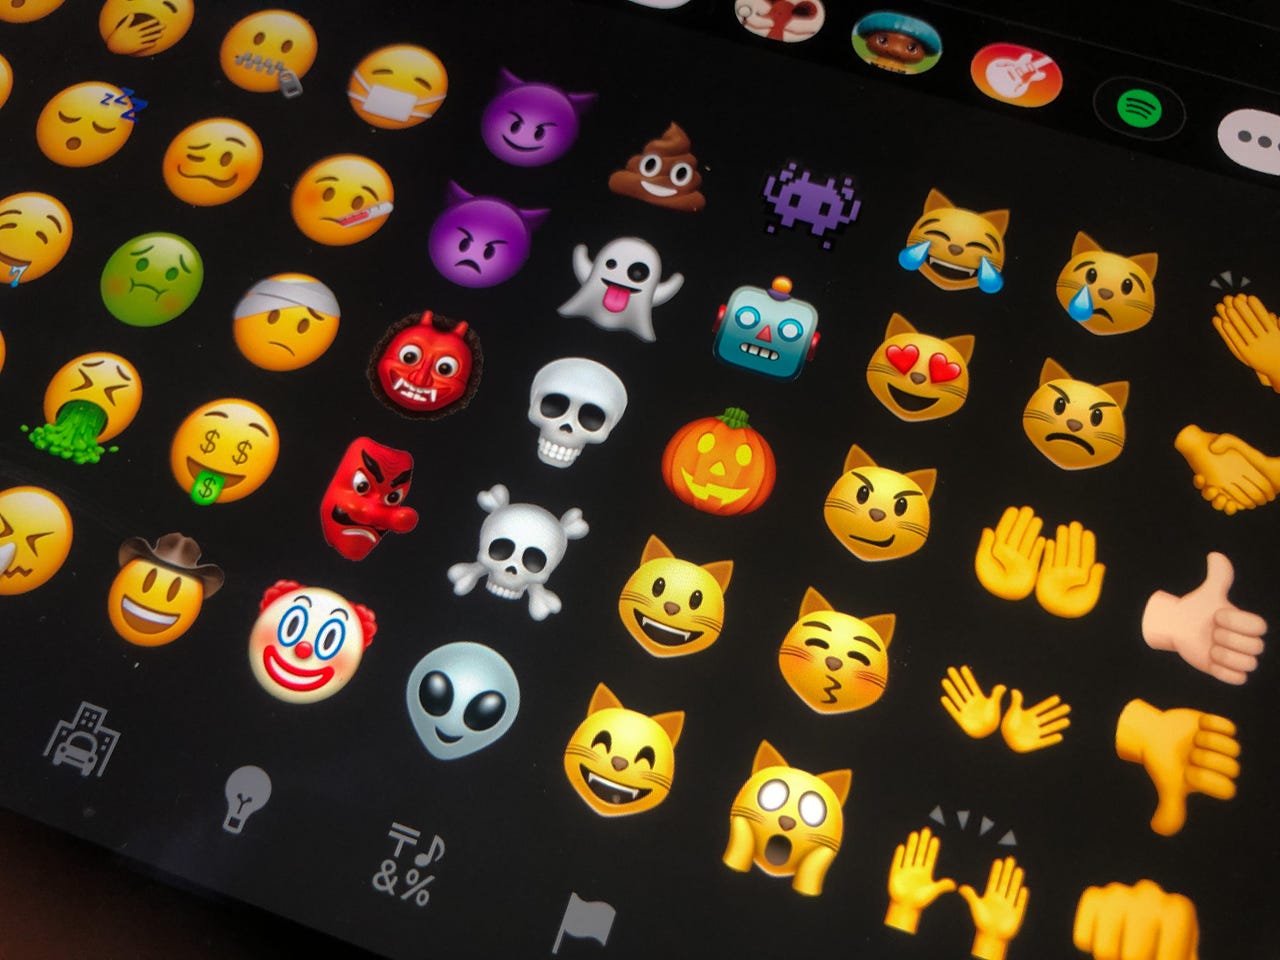 Emojis on an iPhone screen